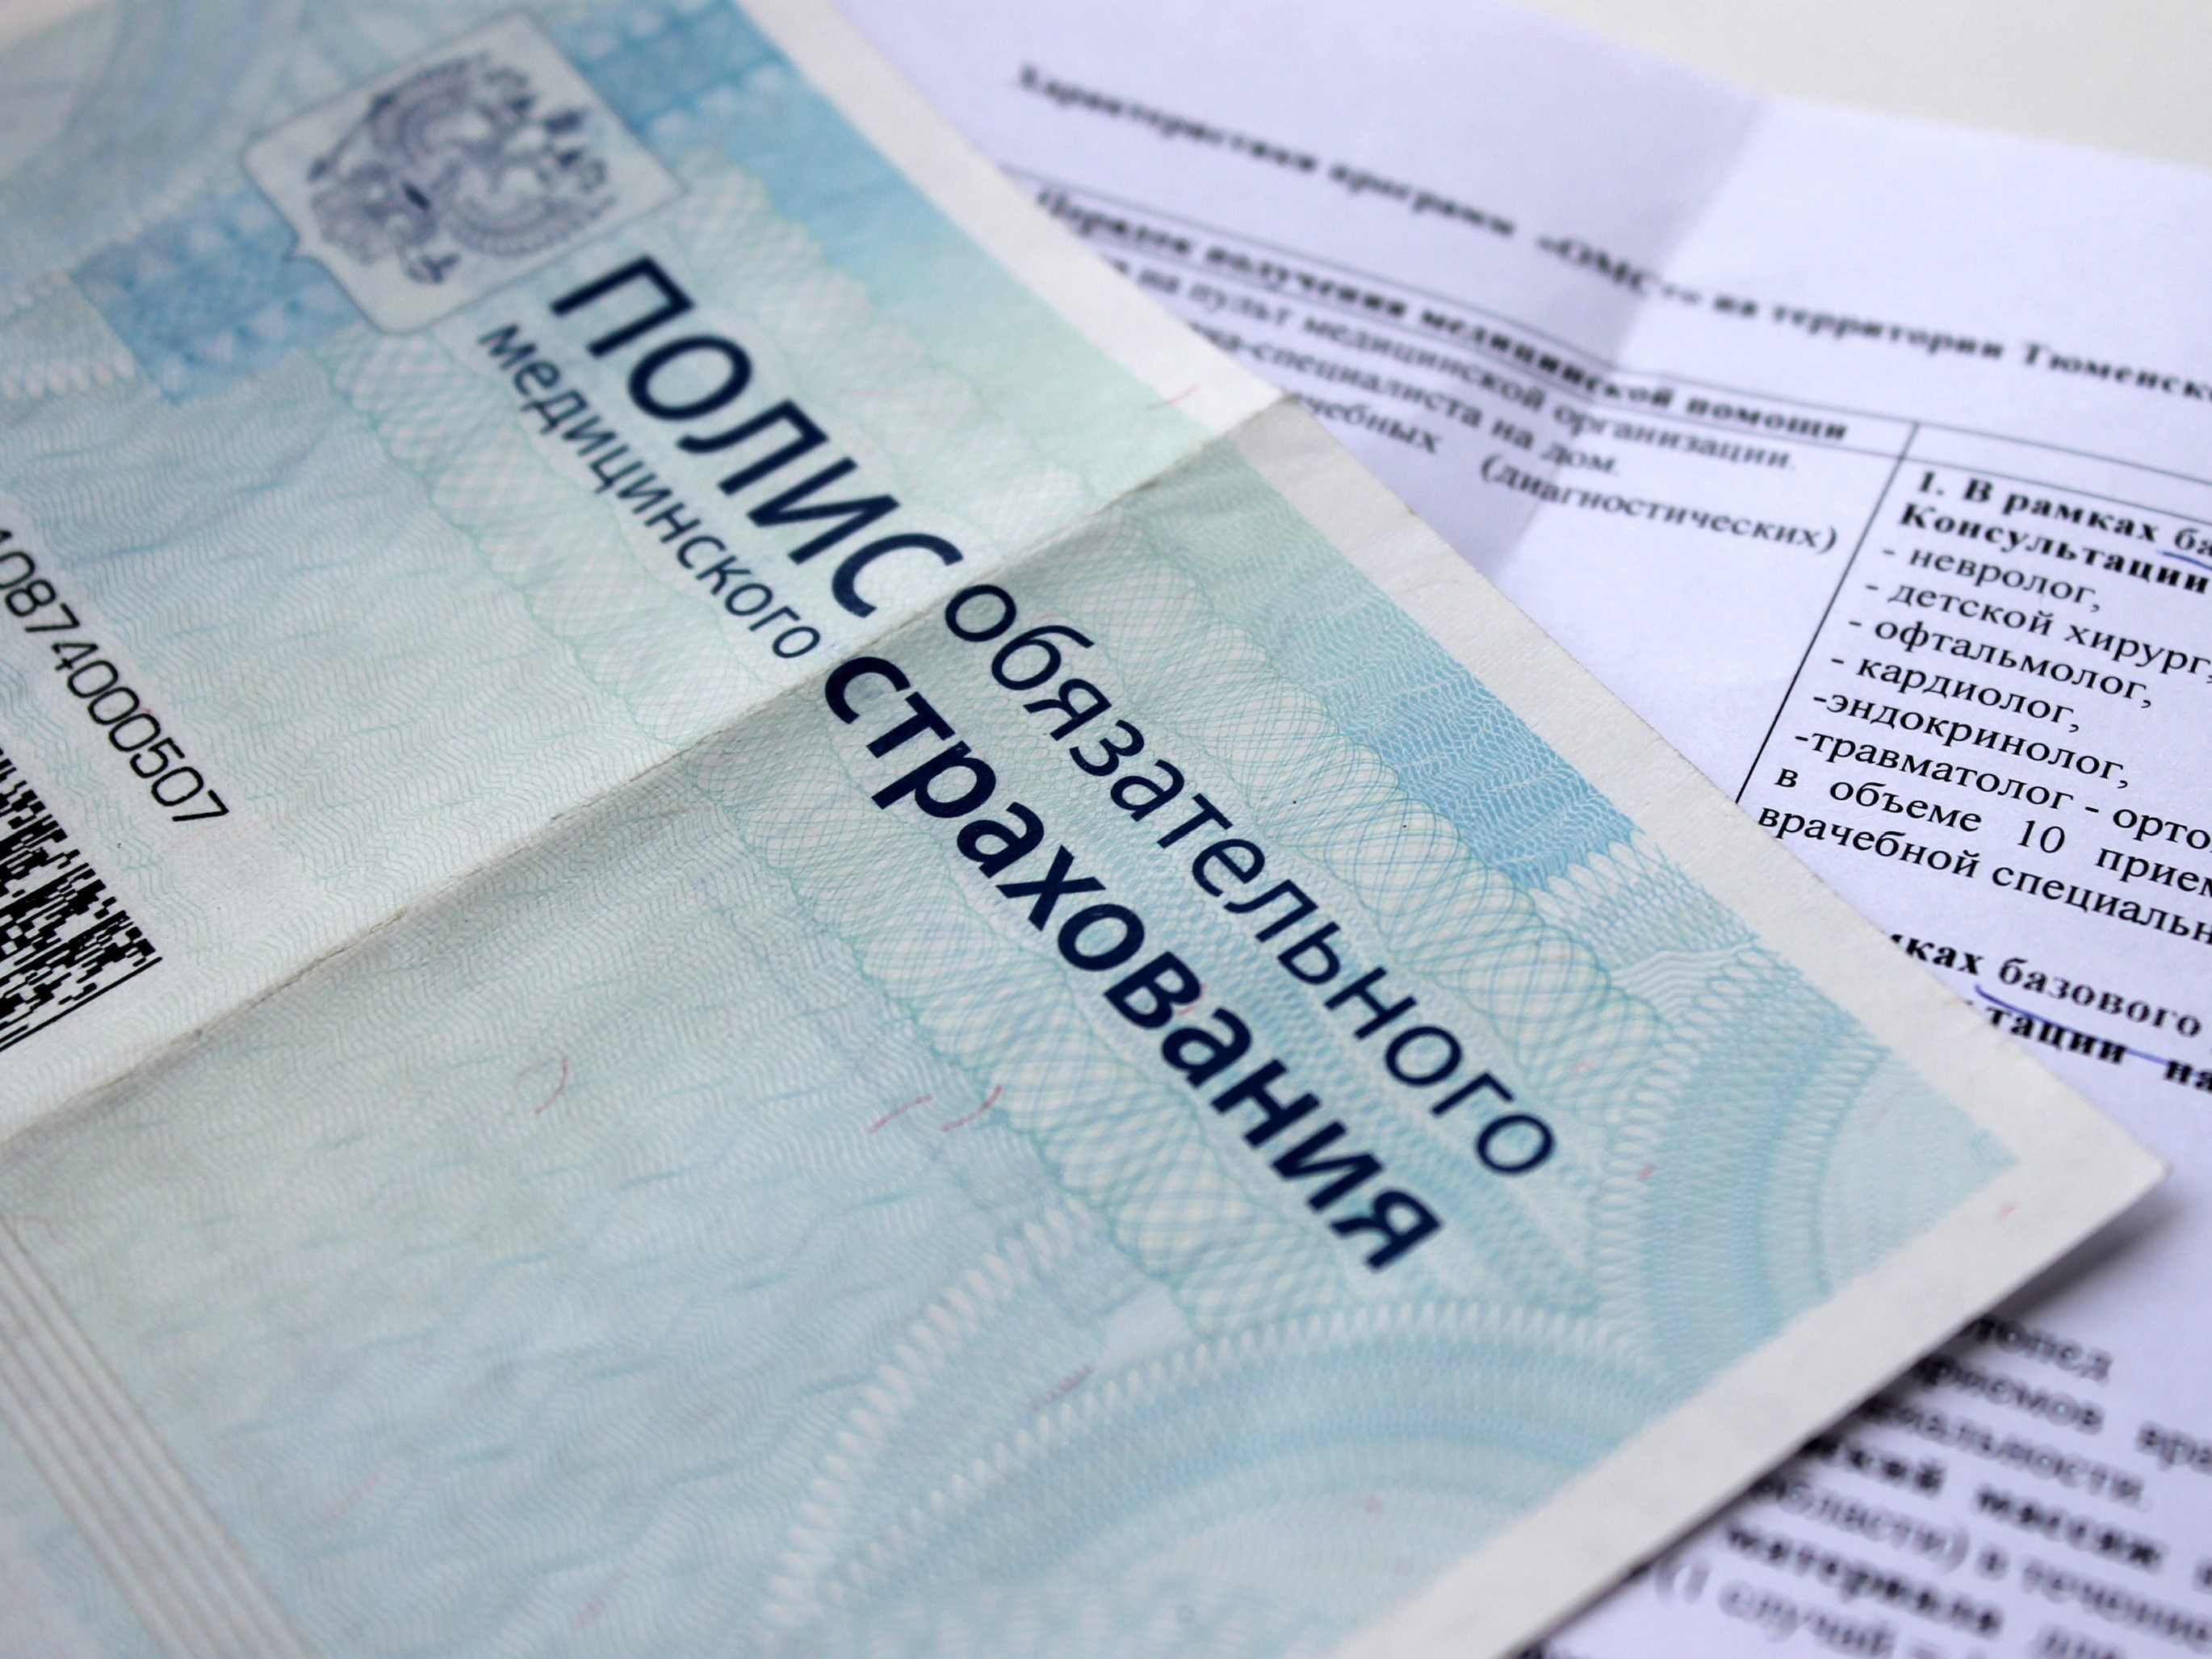 Новый законопроект уточняет срок уплаты взносов на ОМС неработающих граждан